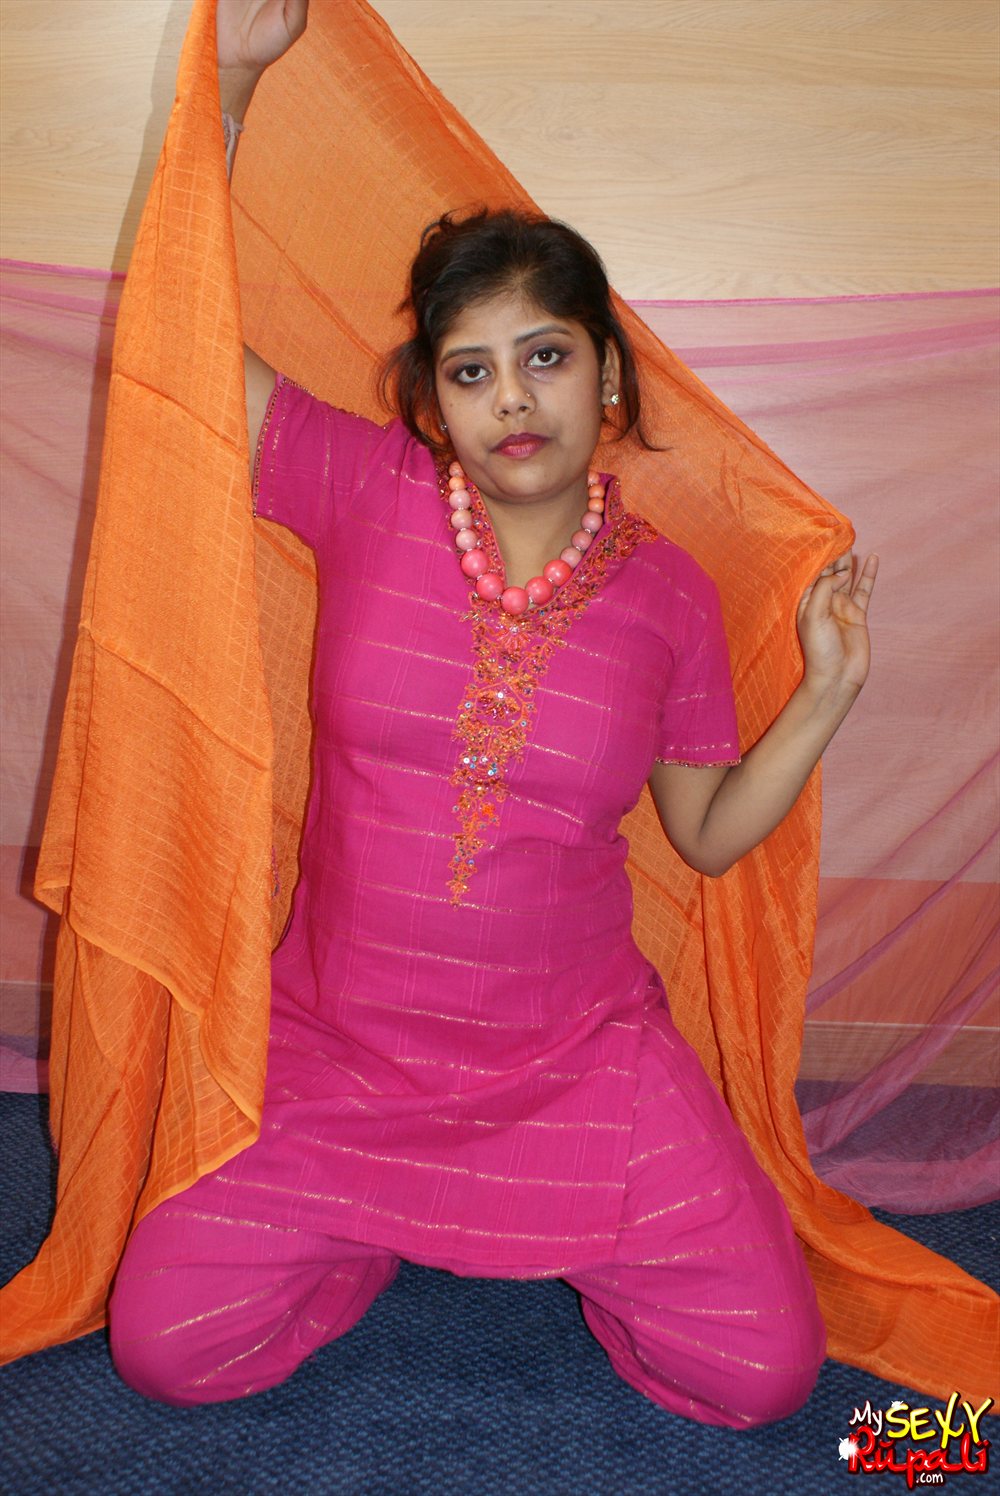 Pic gal33 Rupali in rajhastani dress. 